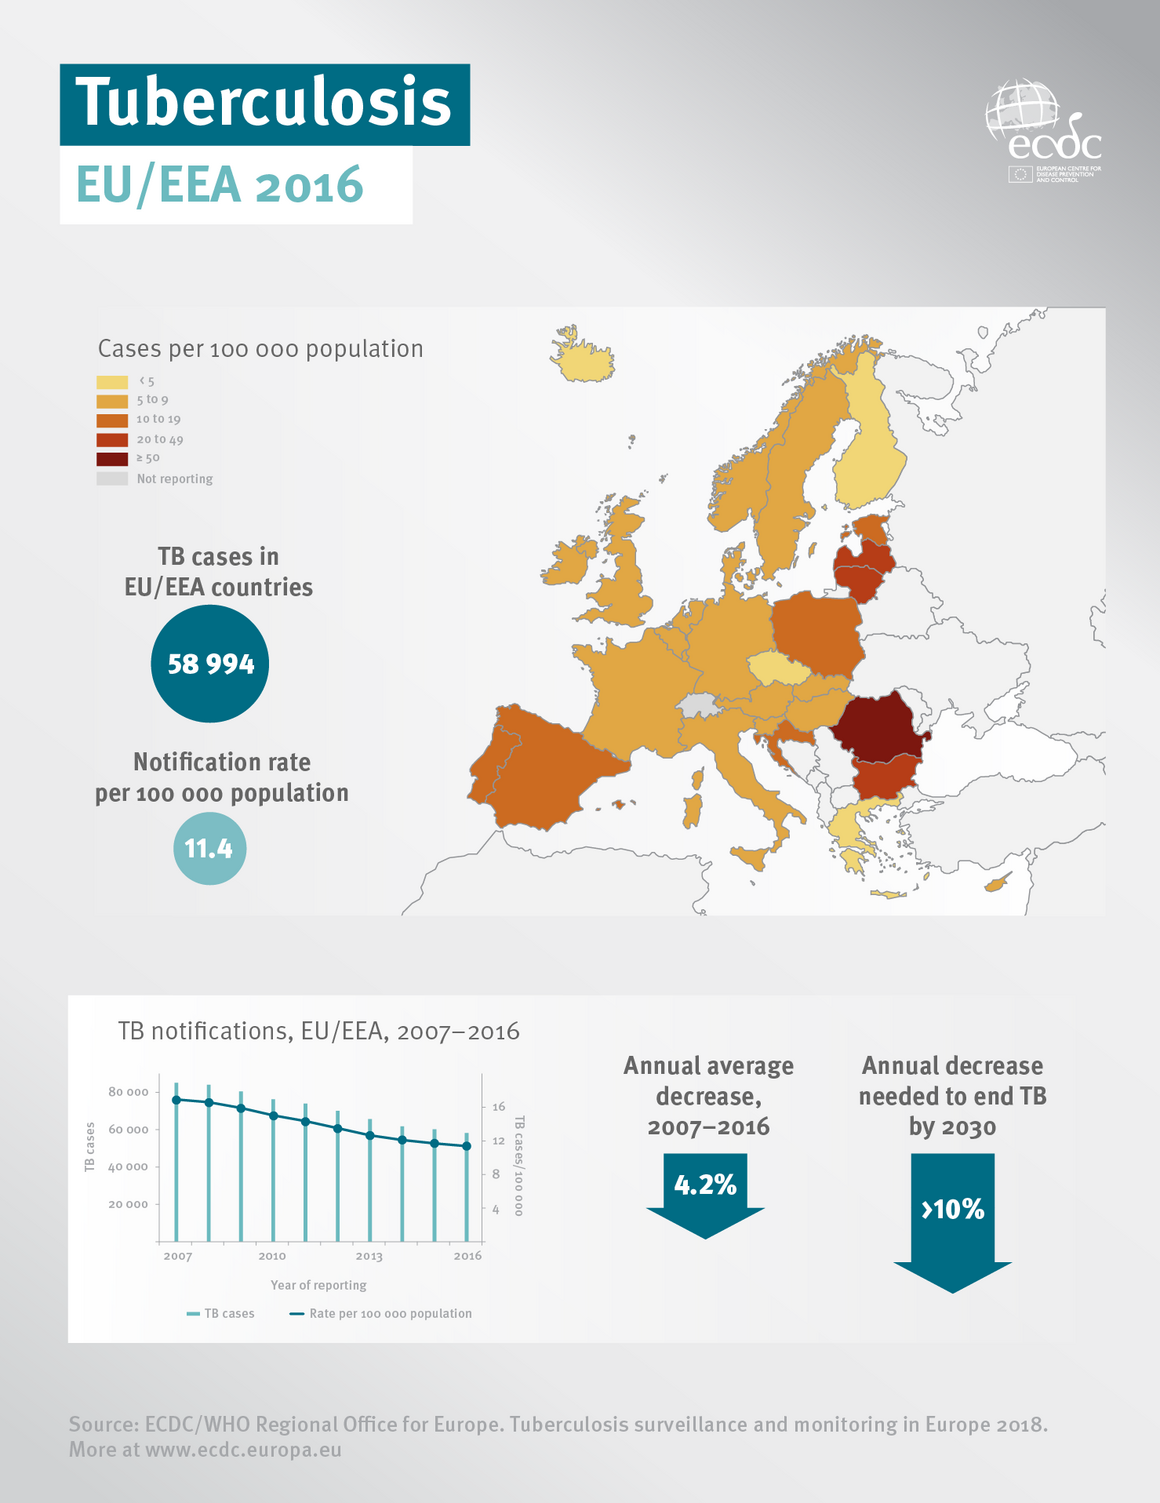 Tuberculosis in the EU/EEA 2016